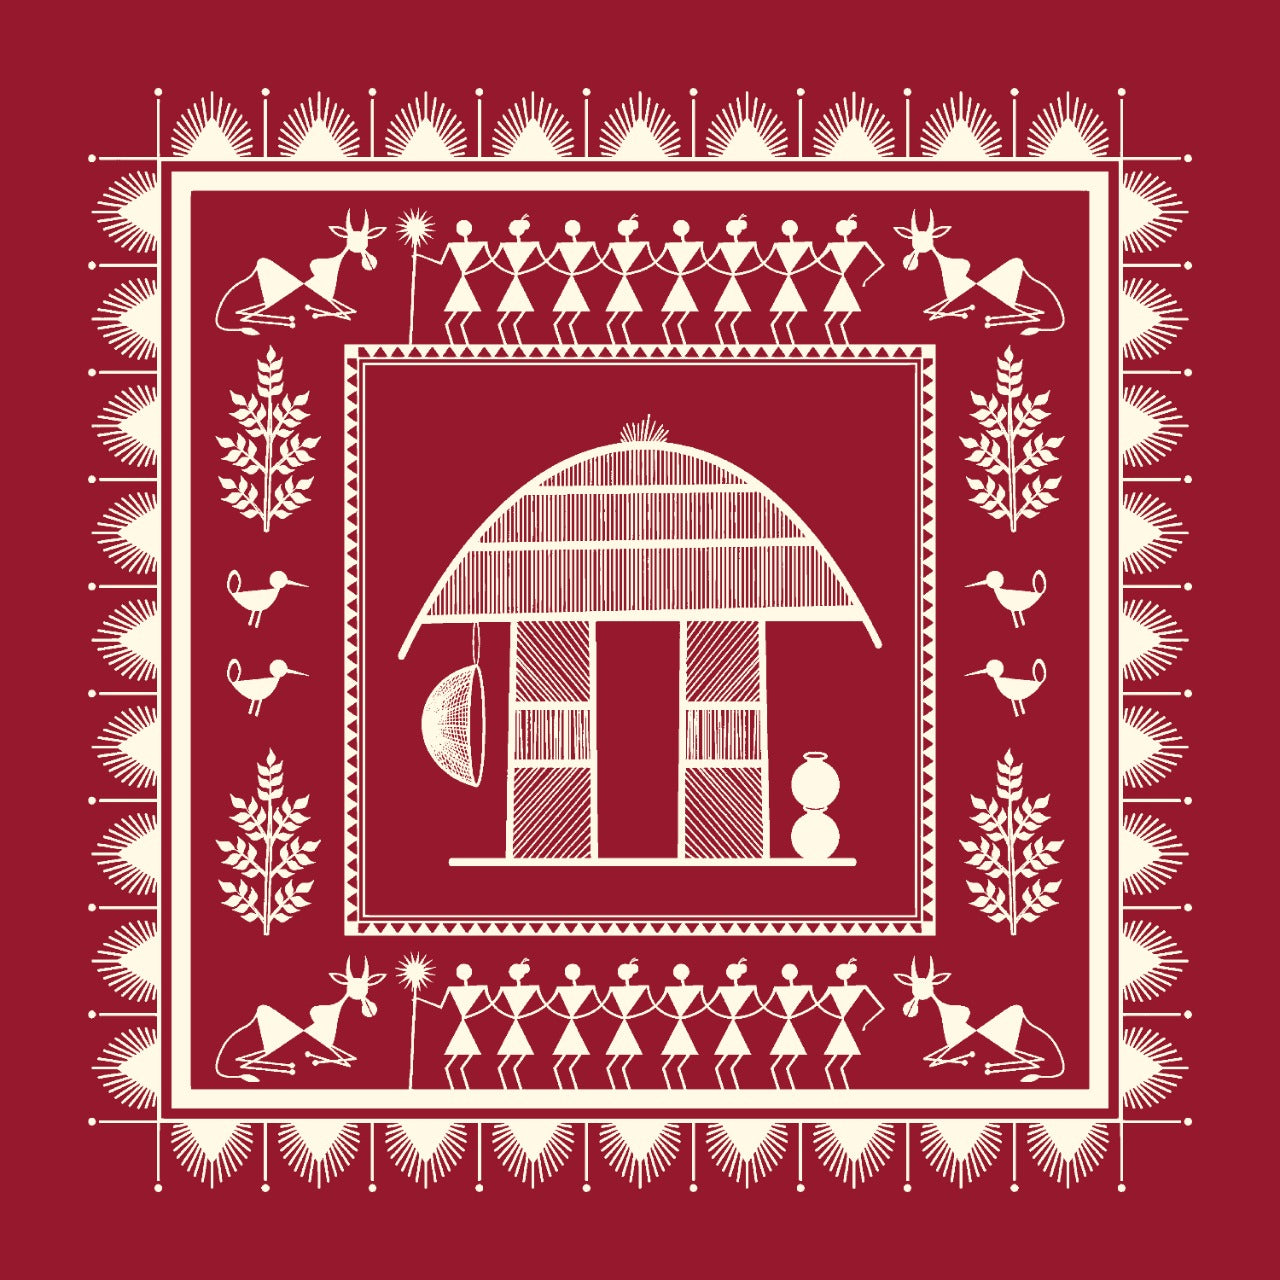 A Warli Art Backdrop featuring a Village Hut scenario. – EFS